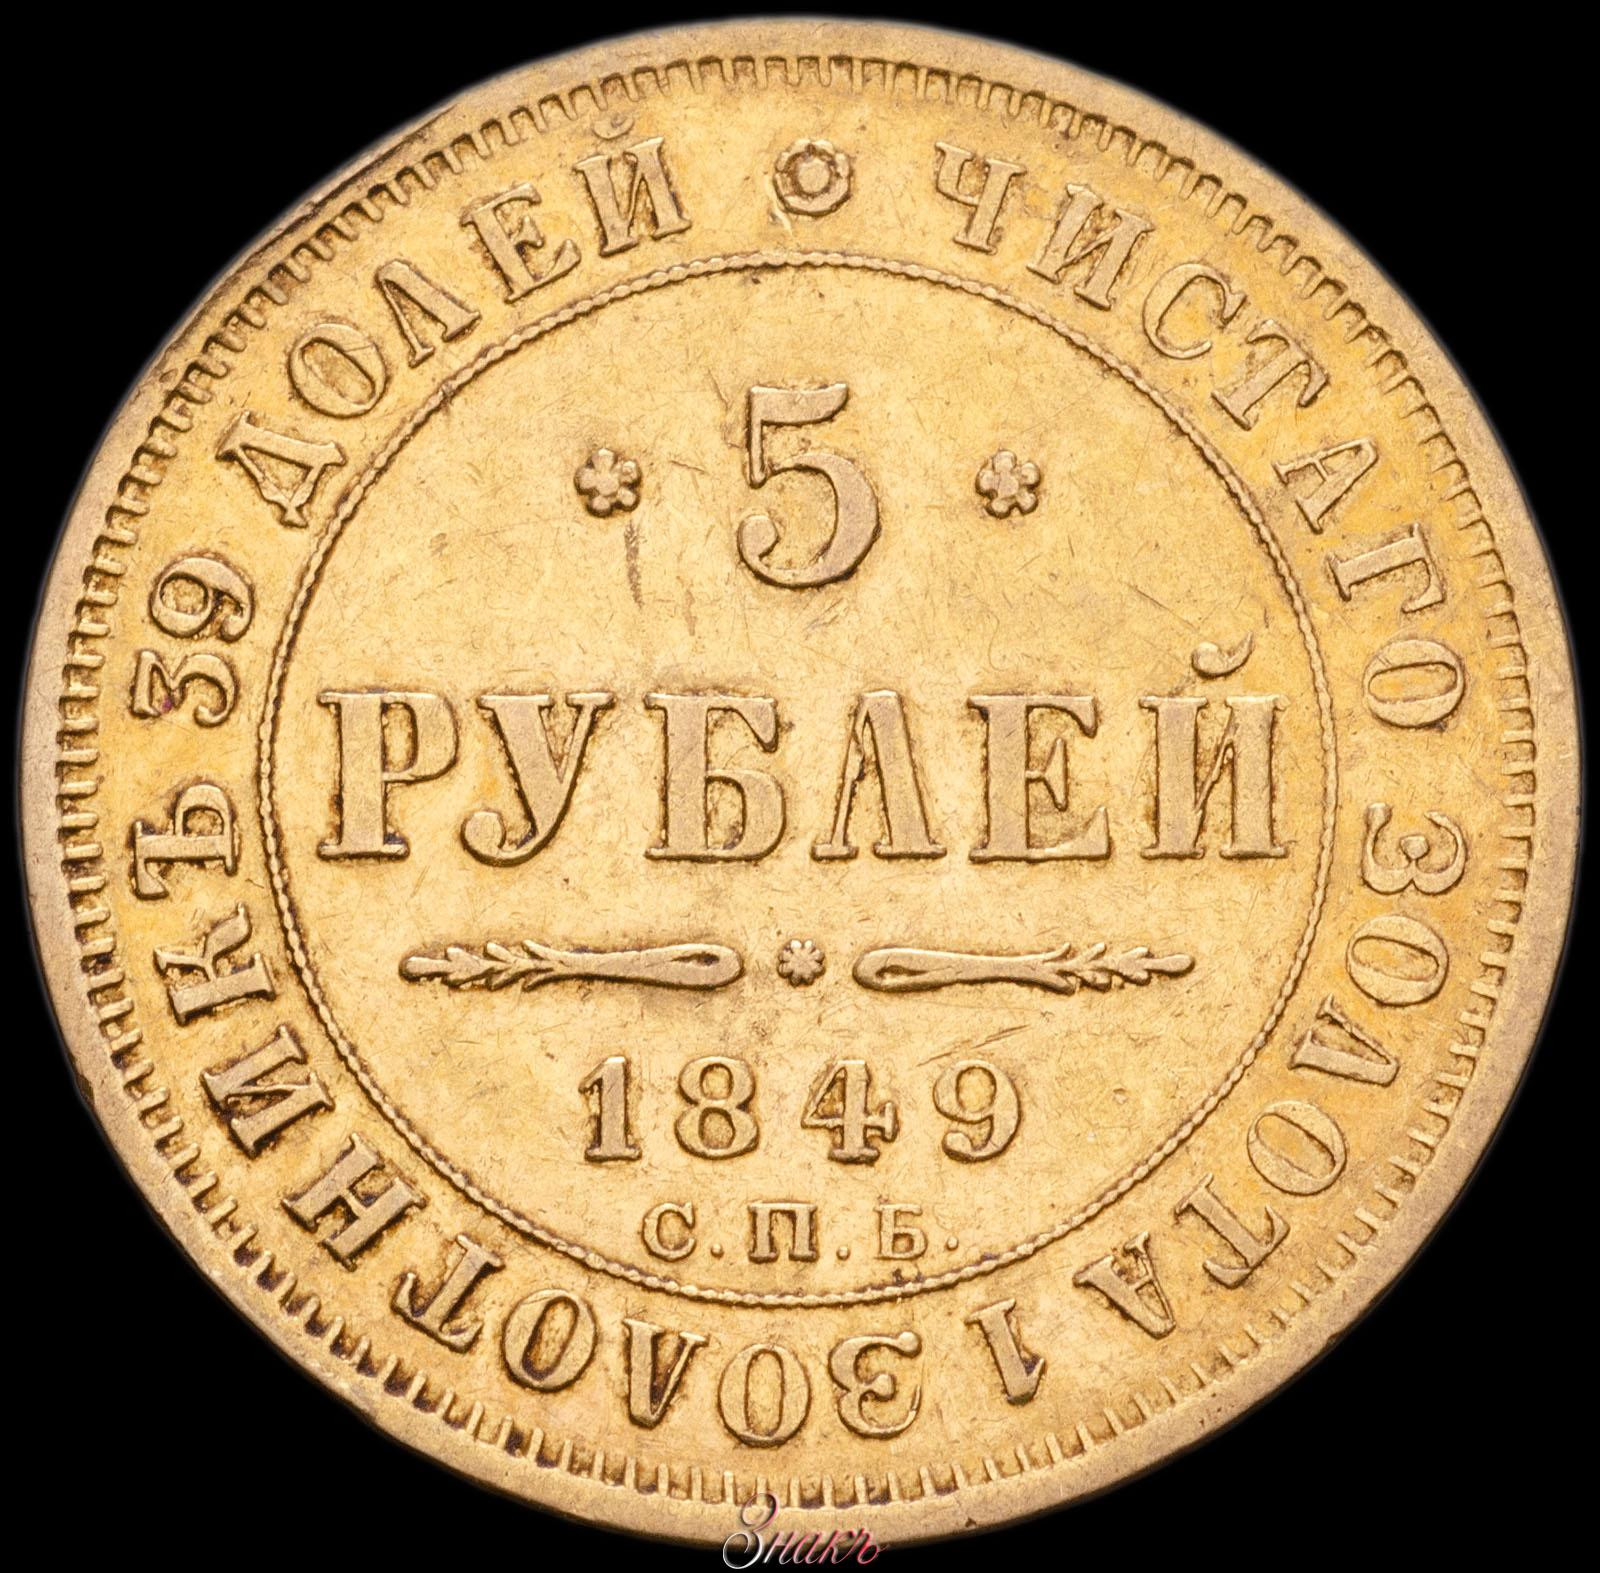 5 рублей 1849 года